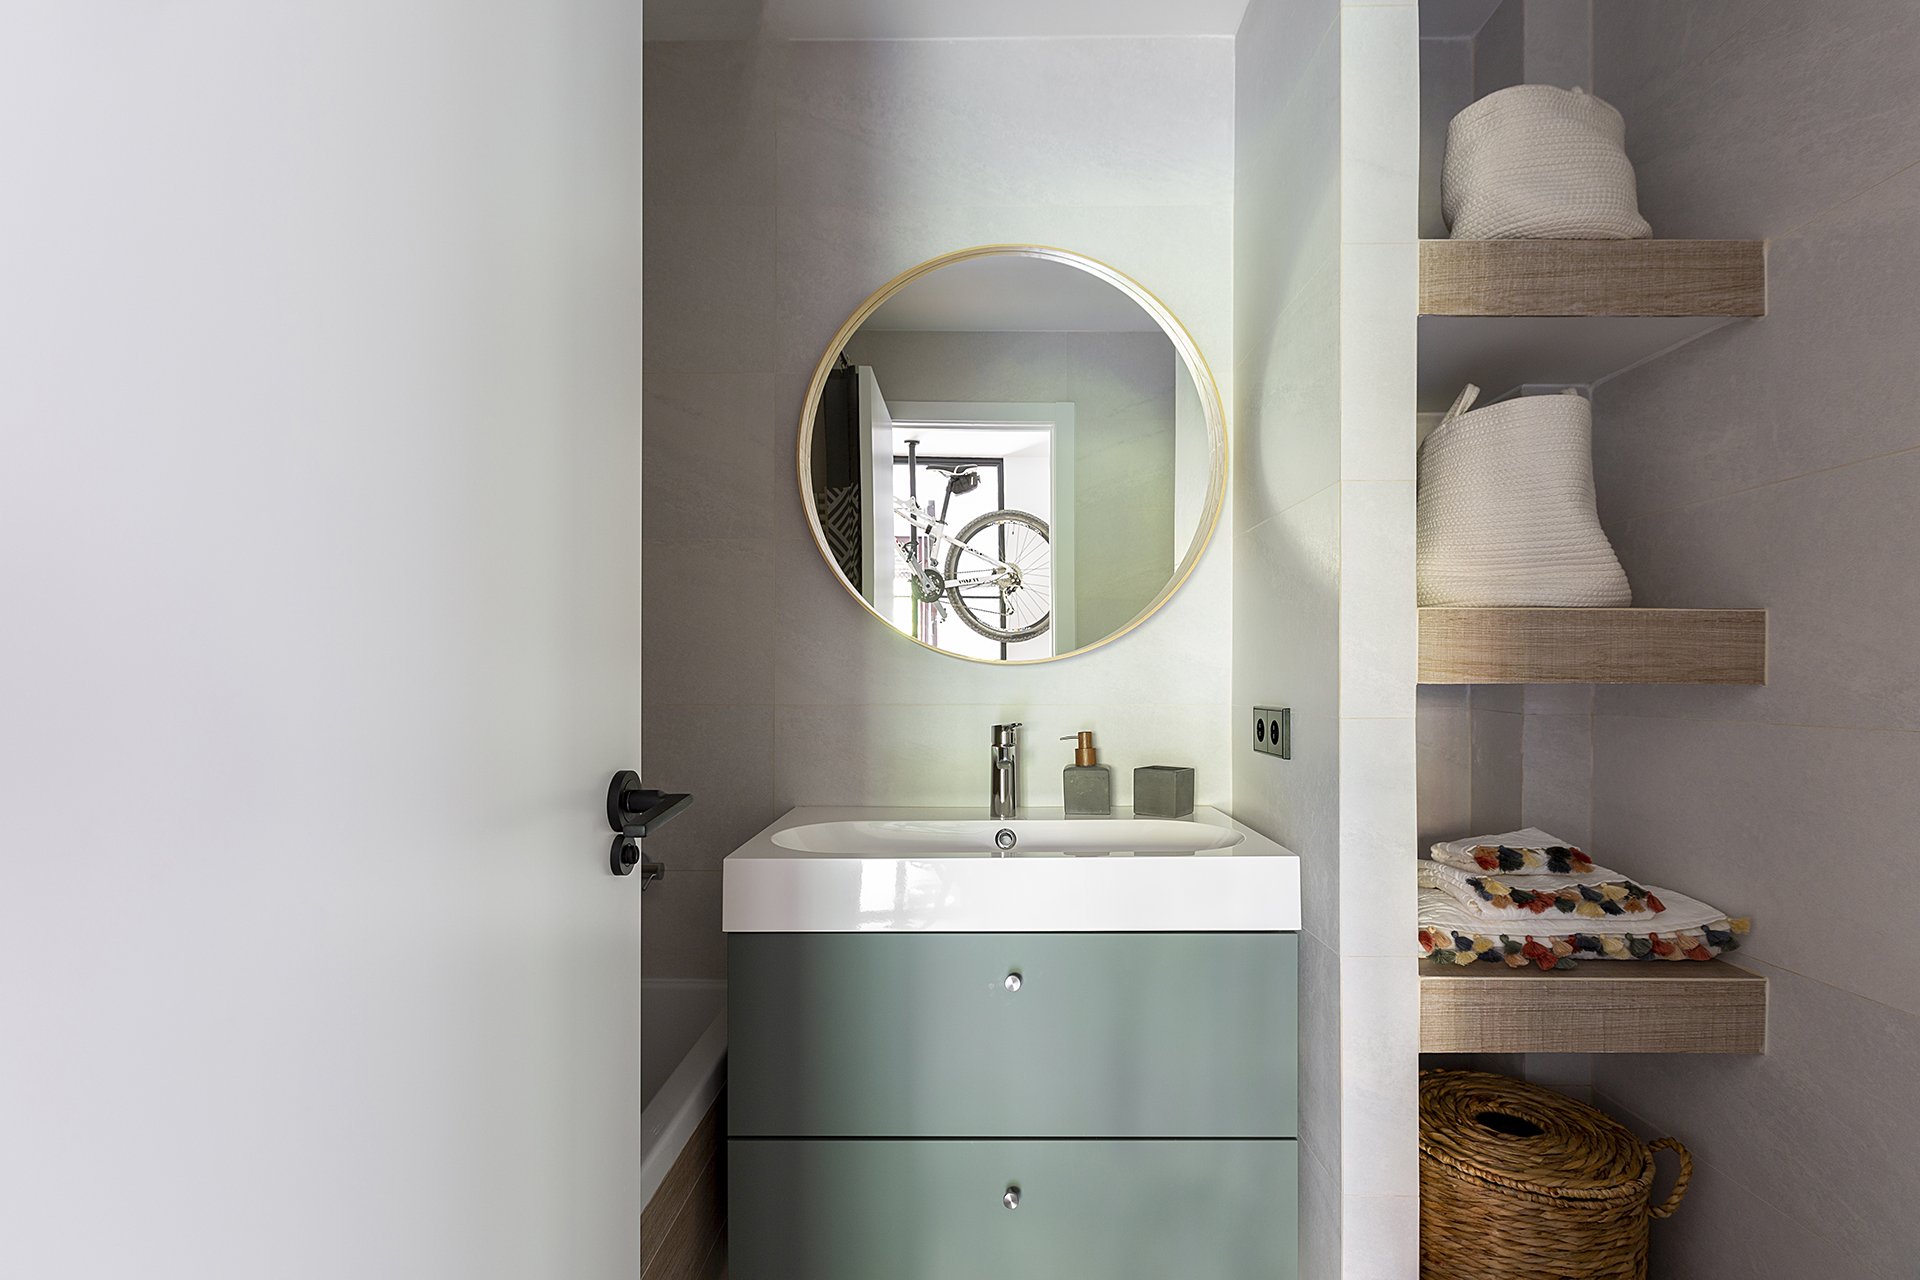 diseño interiores madrid interiorismo integral emmme studio baño vallecas mercedes y oscar .jpg